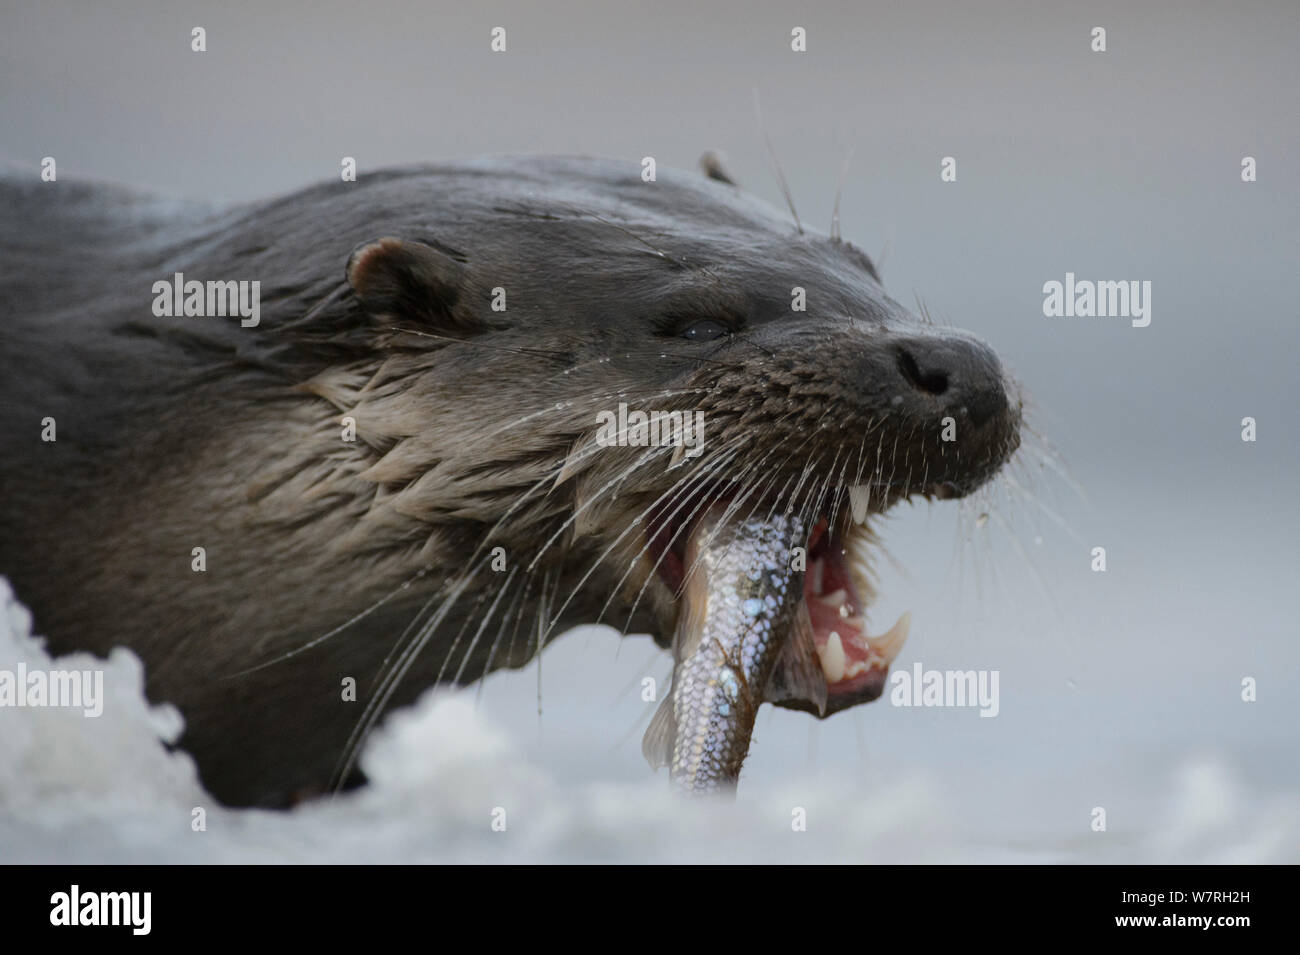 Loutre d'Europe (Lutra lutra) manger un poisson dans la neige, le sud de l'Estonie, janvier. Banque D'Images